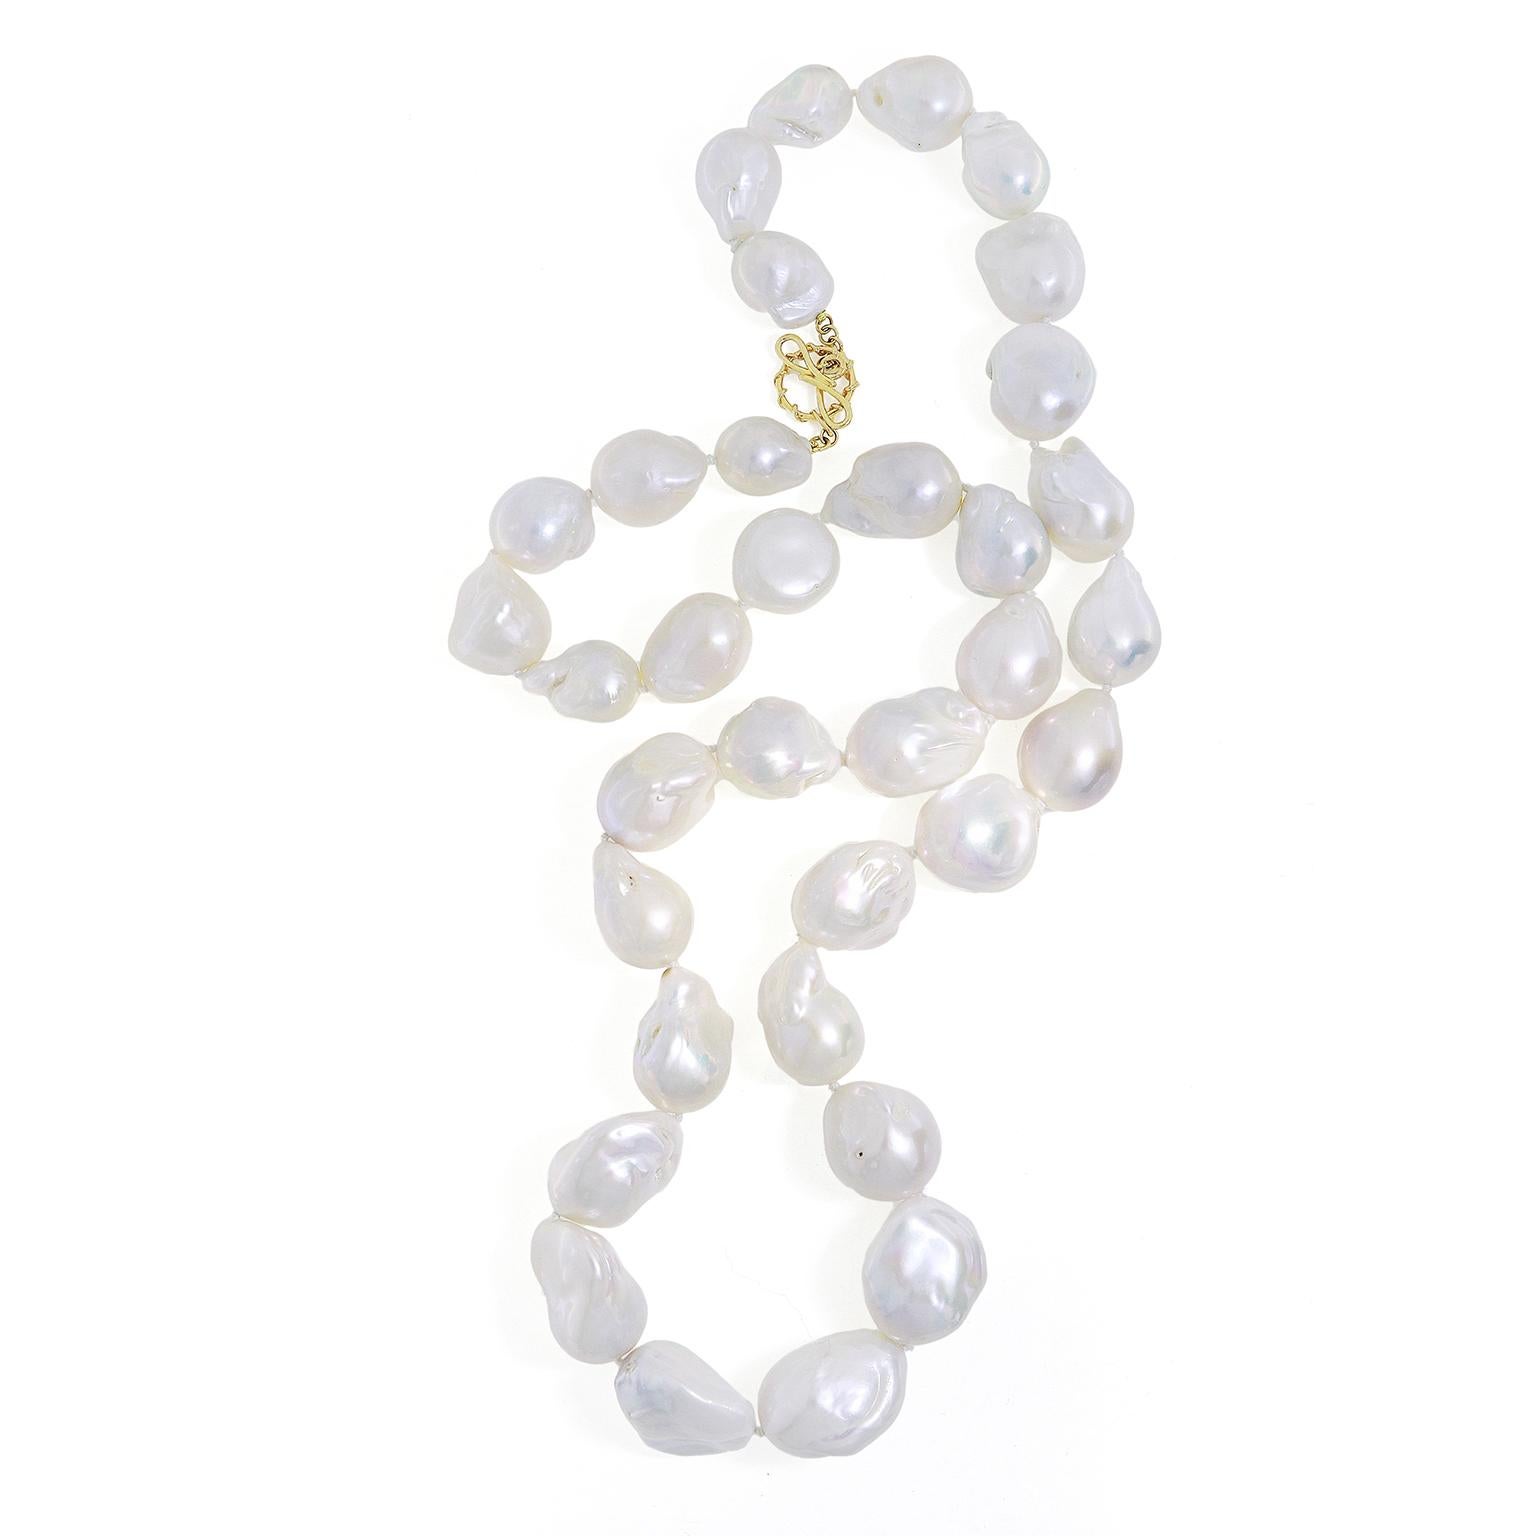 La beauté multicolore des perles d'eau douce baroques brille dans ce collier. Les tons blancs, roses et bleus sont relevés lorsque la lumière tombe sur les pierres précieuses de forme irrégulière. Le total est de 1860 carats. Complété par un nœud en